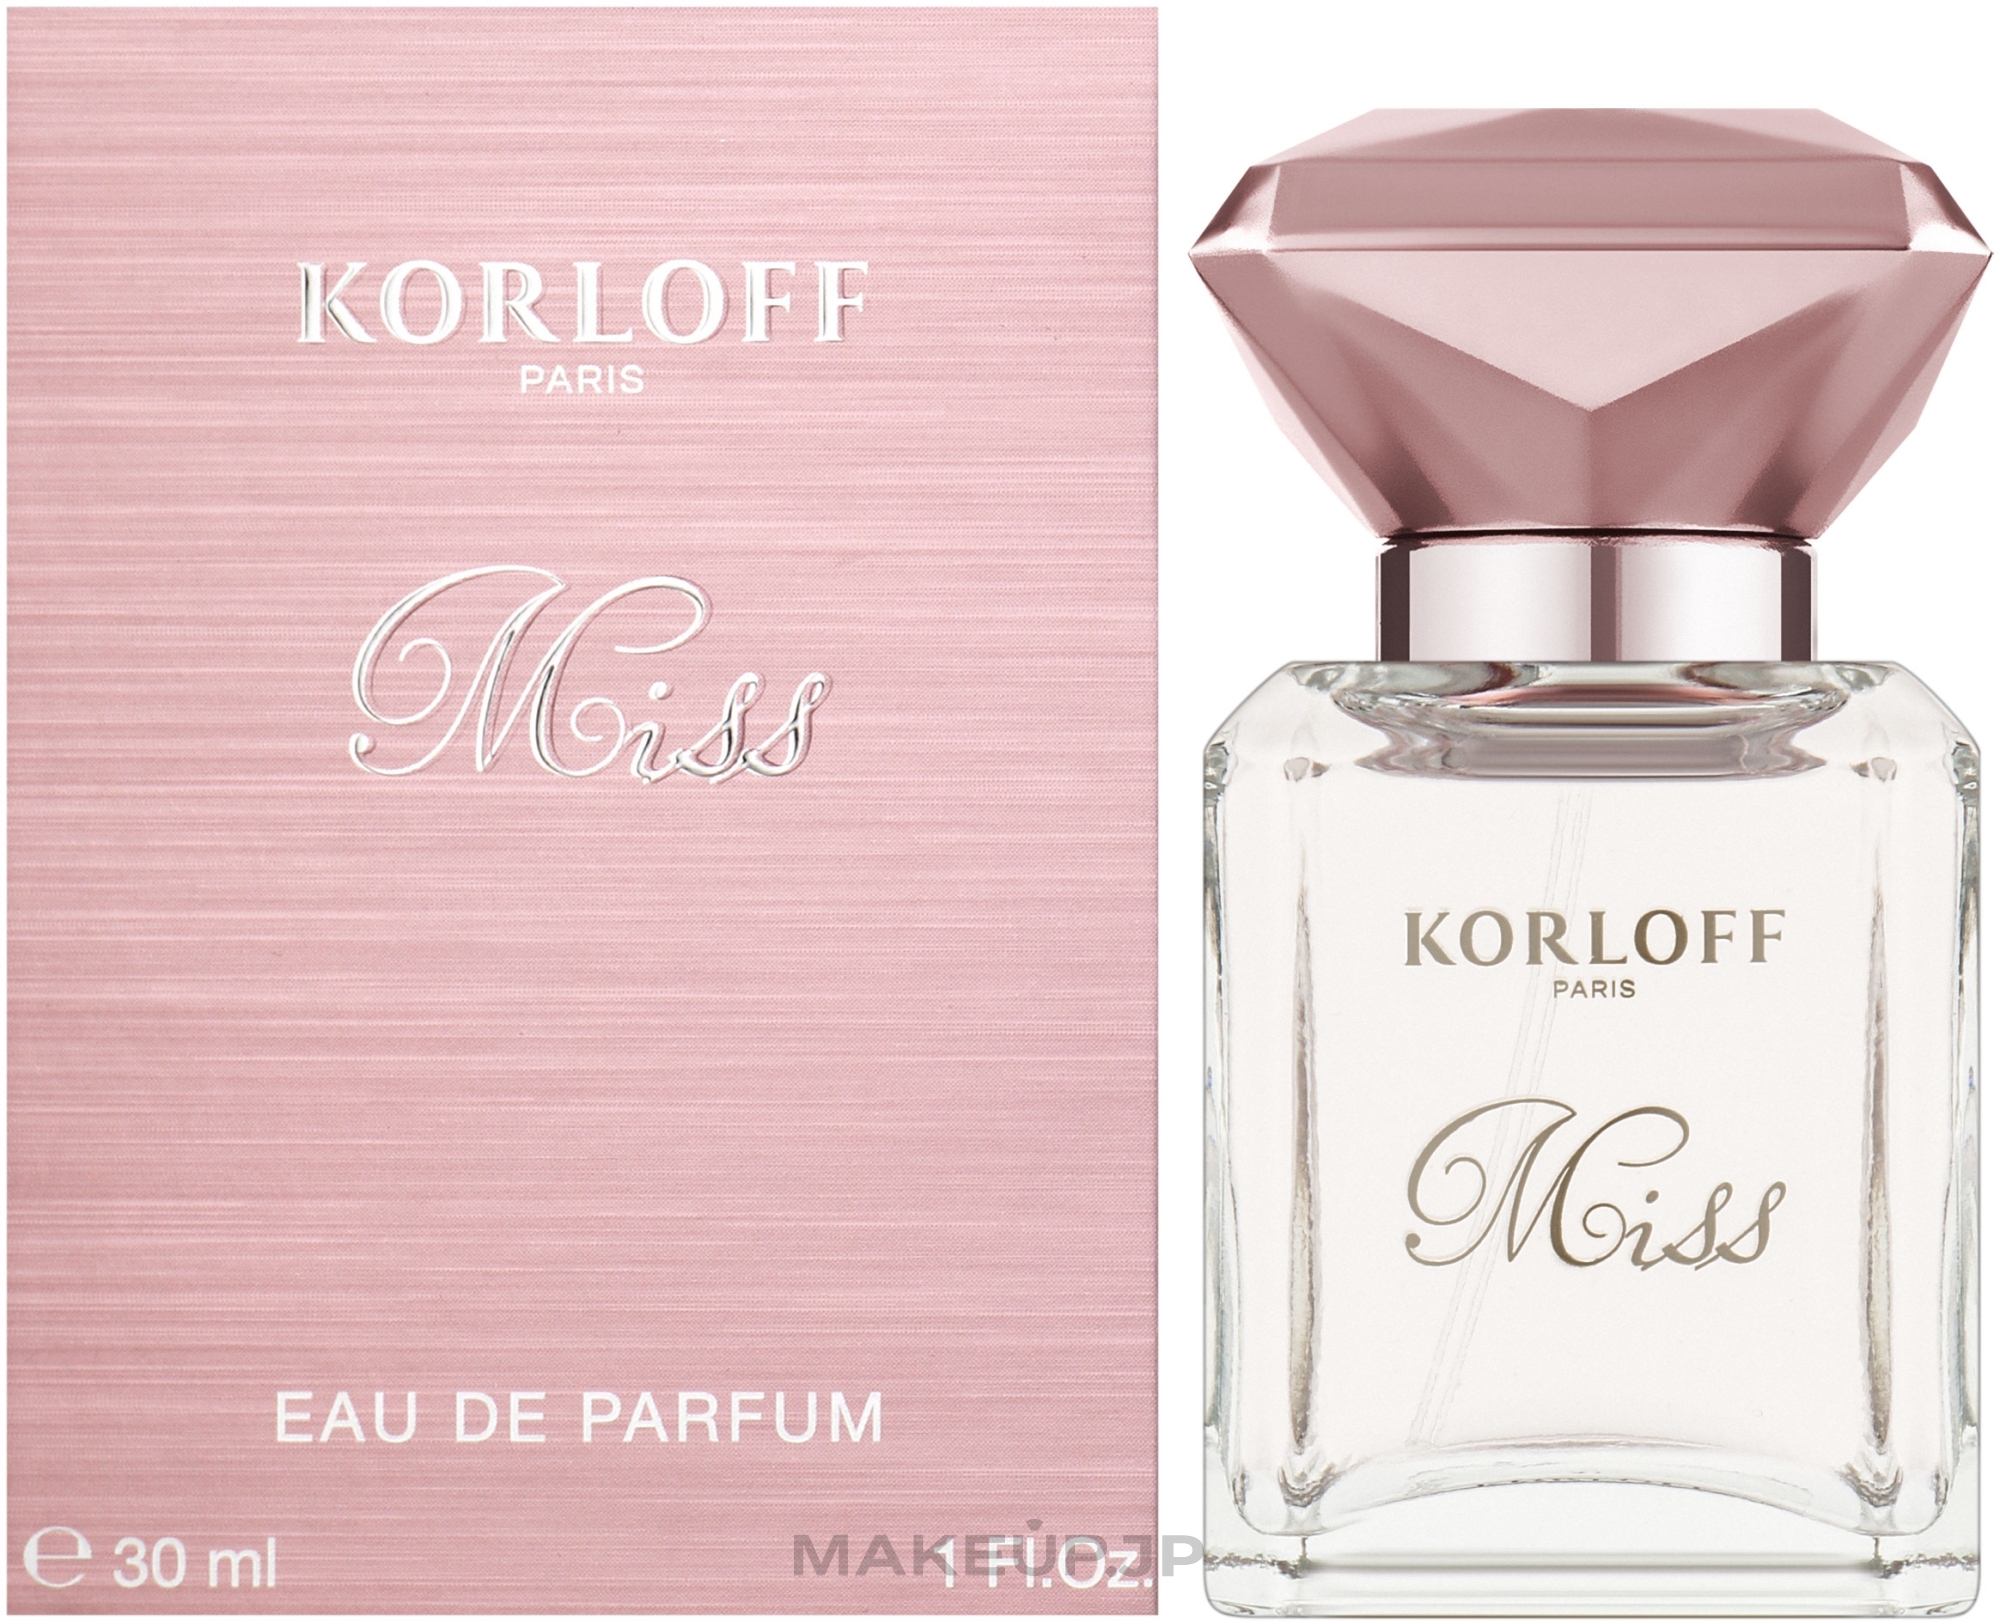 Korloff Paris Miss - Eau de Parfum — photo 30 ml